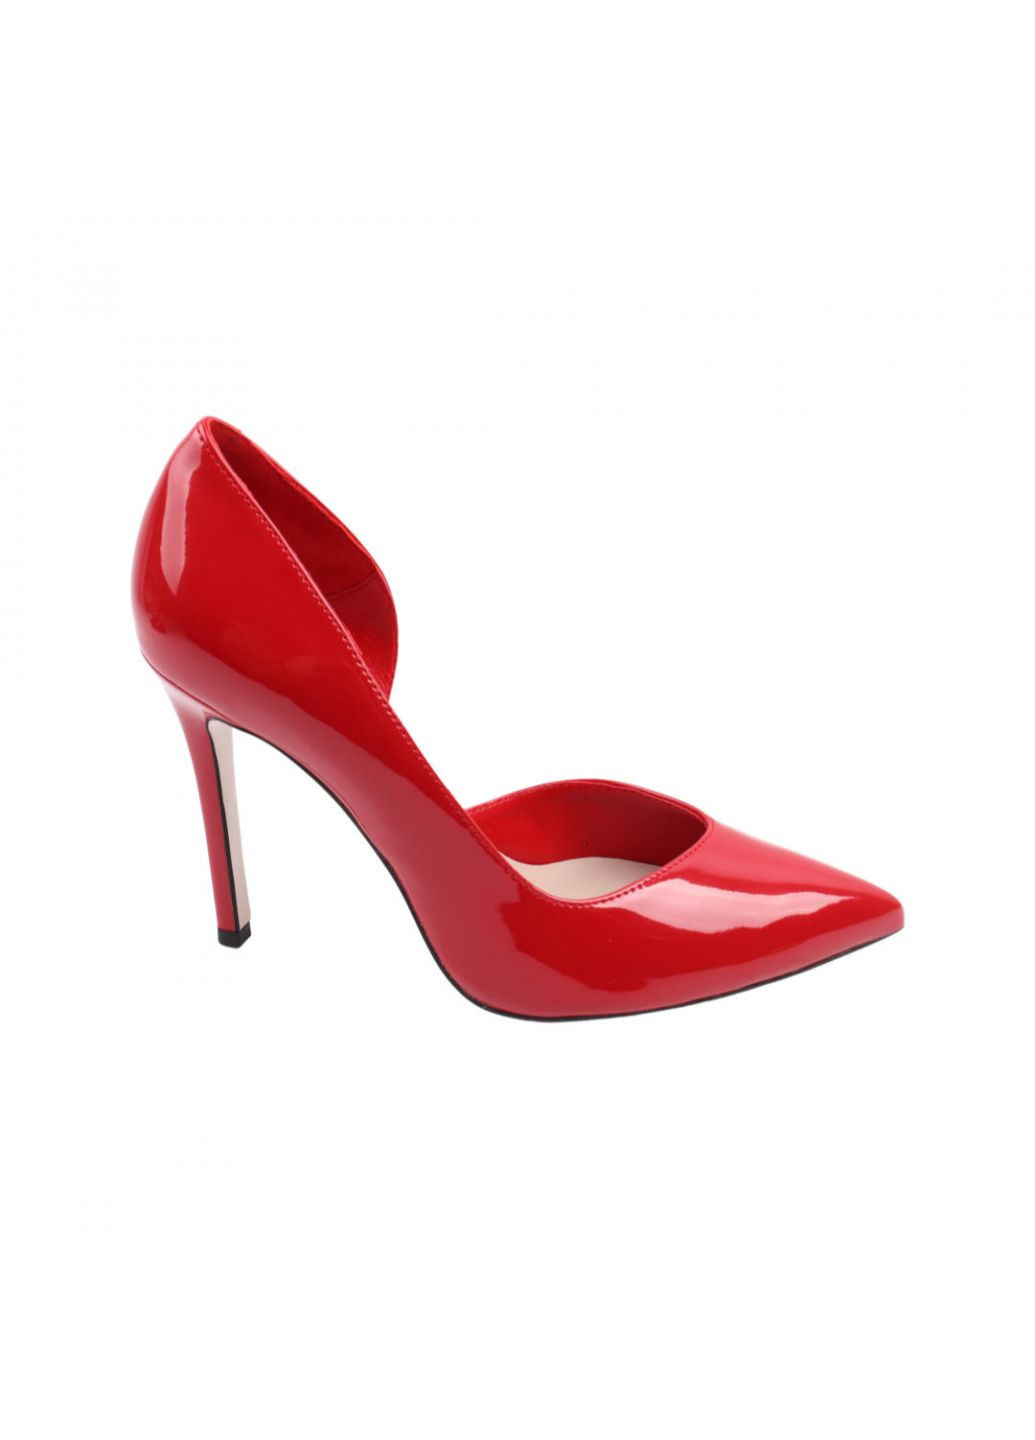 Туфли женские красные натуральная лаковая кожа Bravo Moda